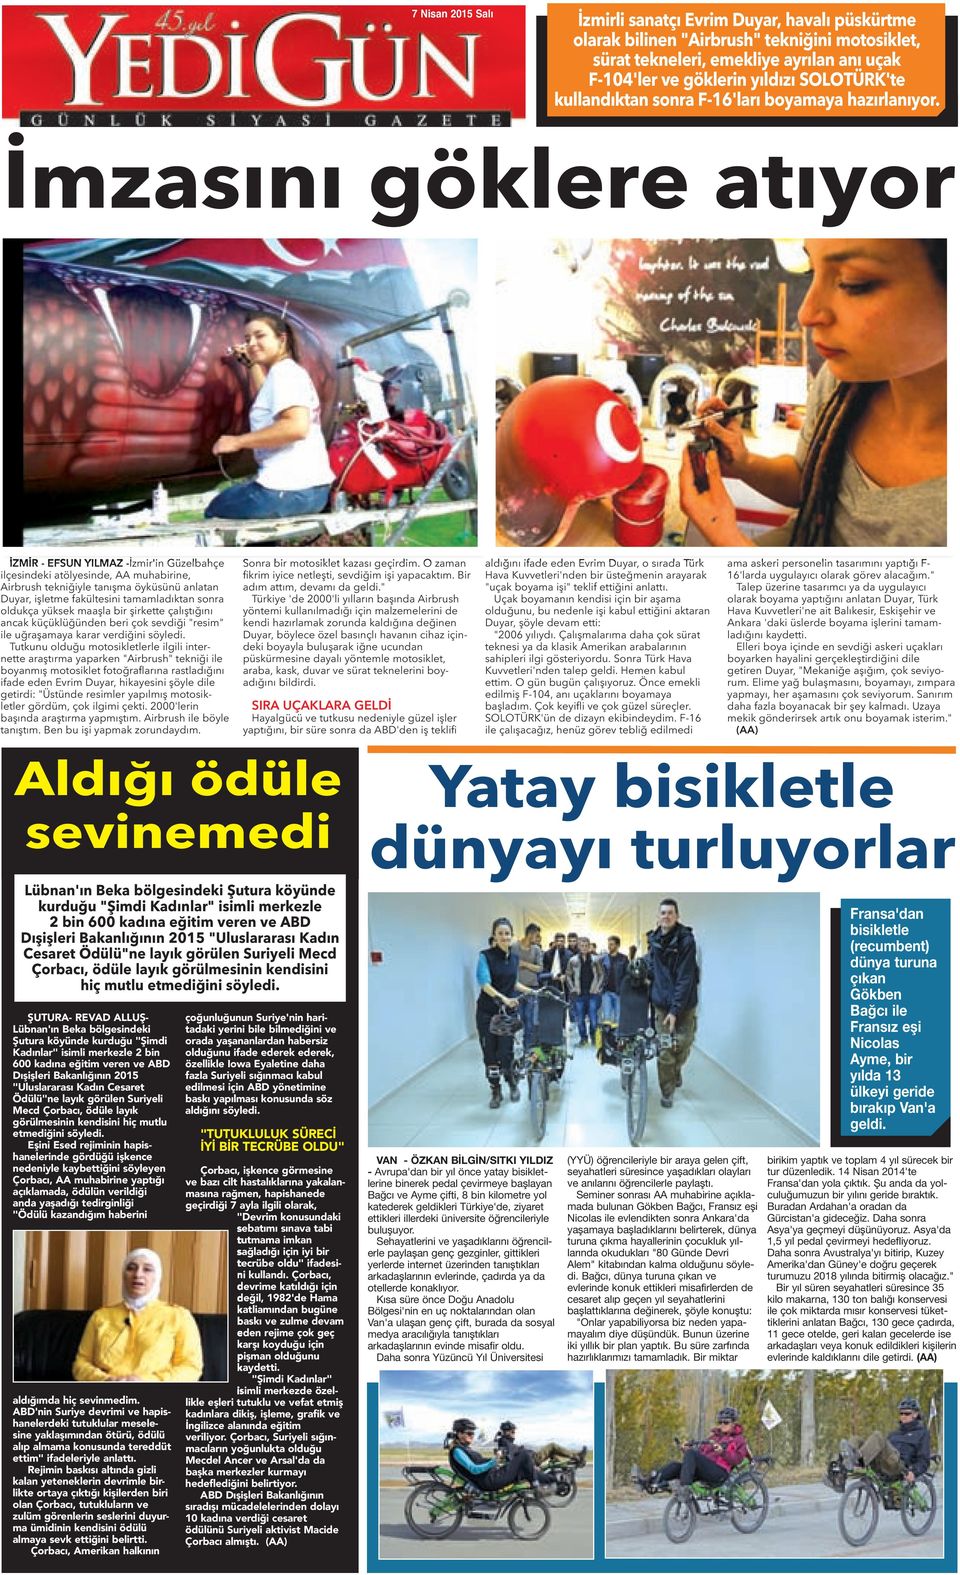 İmzasını göklere atıyor İZMİR - EFSUN YILMAZ -İzmir'in Güzelbahçe ilçesindeki atölyesinde, AA muhabirine, Airbrush tekniğiyle tanışma öyküsünü anlatan Duyar, işletme fakültesini tamamladıktan sonra